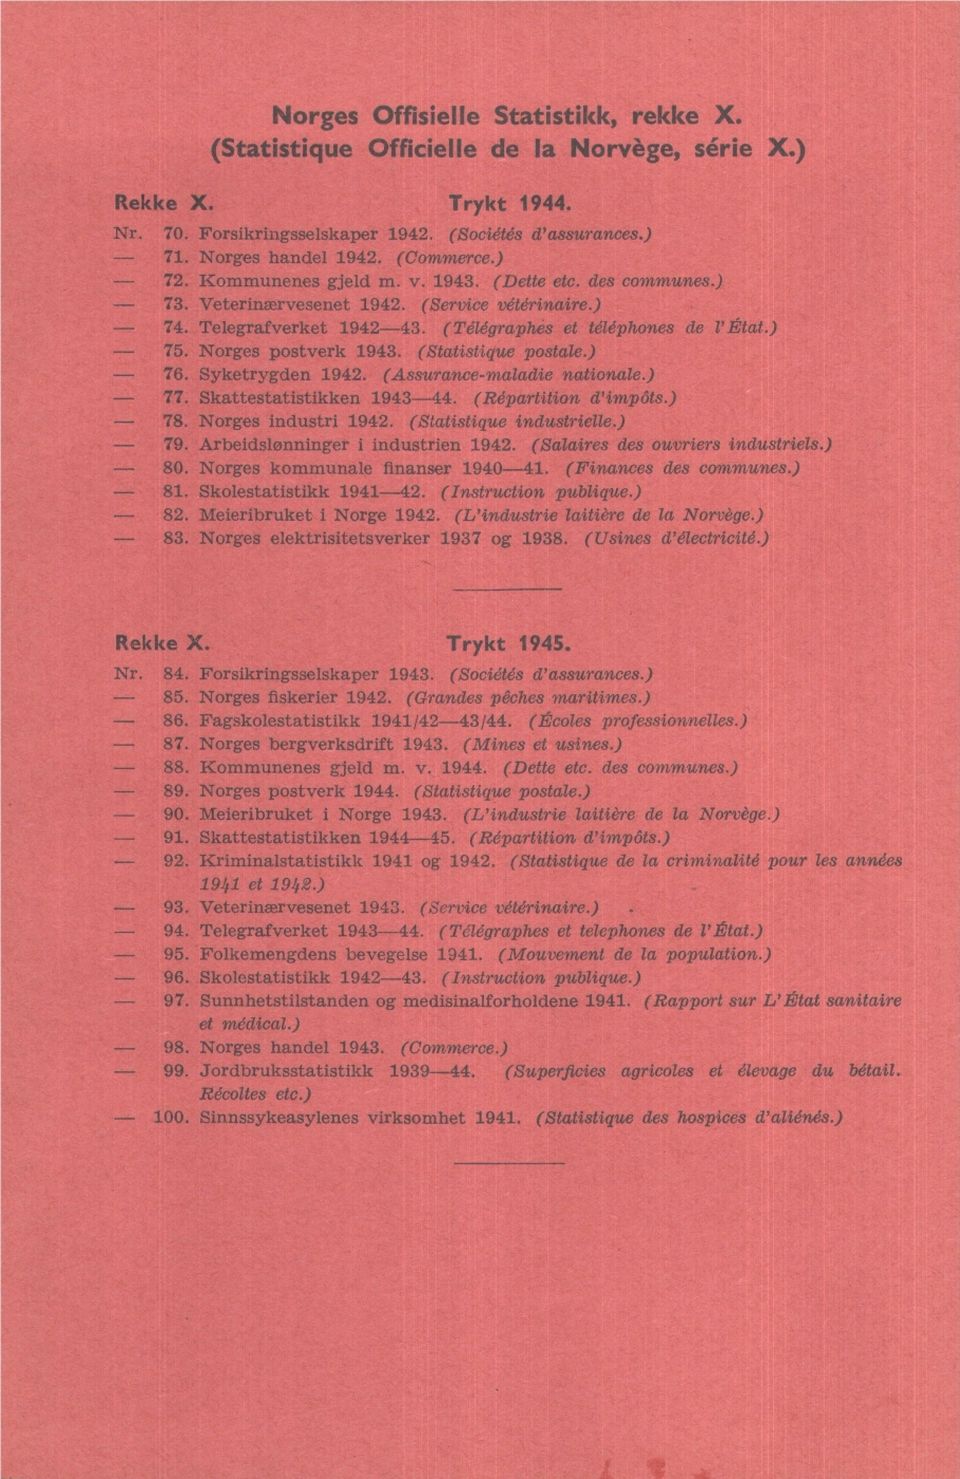 Norges postverk 1943. (Statistique postale.) 76. Syketrygden 1942. (Assurance-maladie nation,ale.) 77. Skattestatistikken 1943-44. (Répartition d'impdts.) 78. Norges industri 1942.